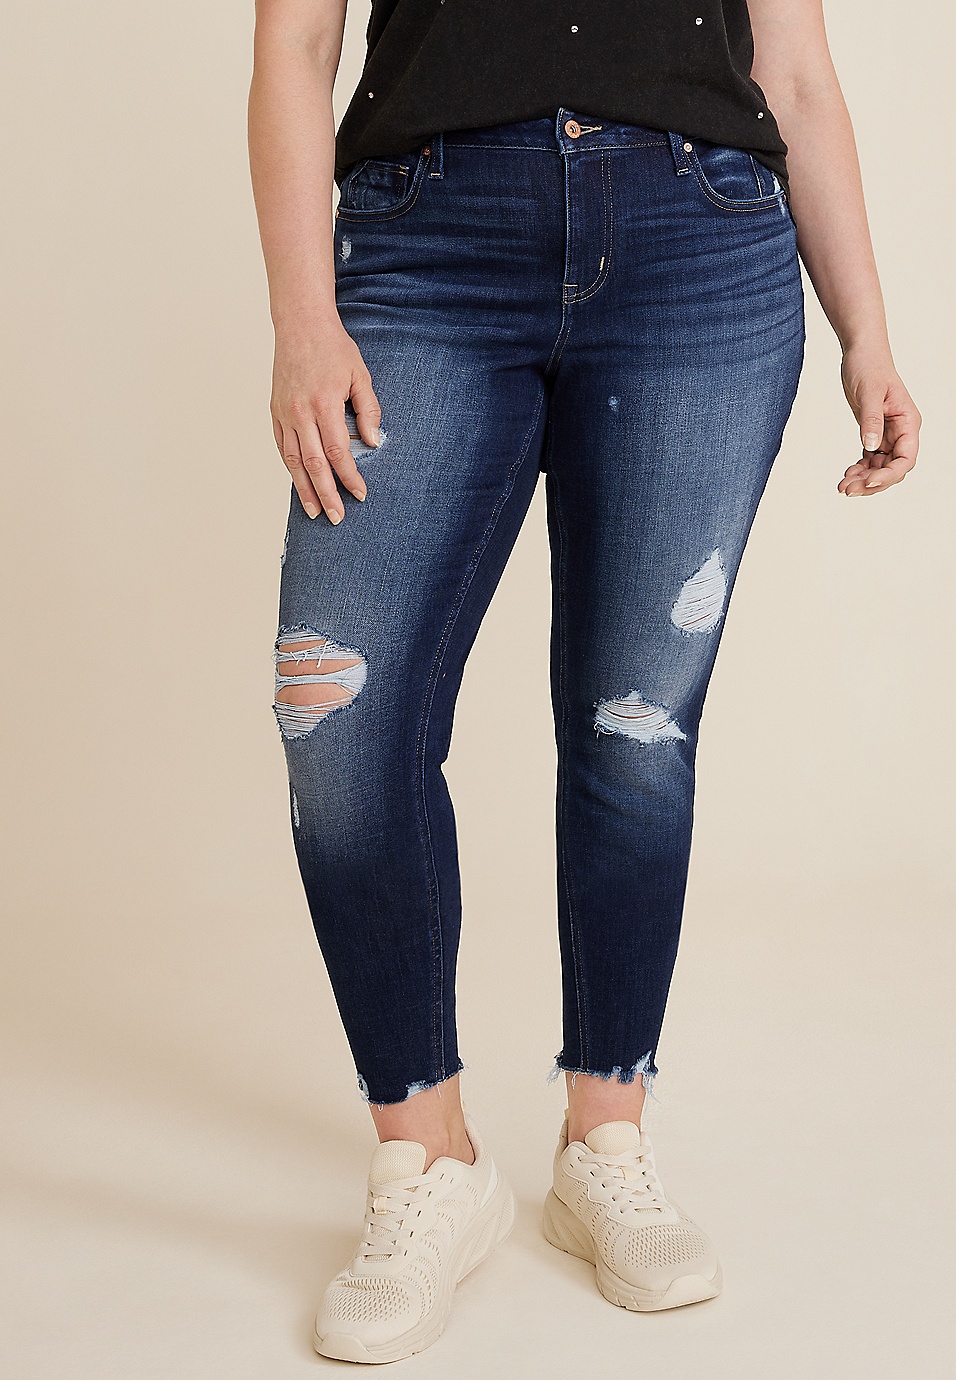 Shorts Womens High Waisted Worn Original Hem Torn Jeans Womens